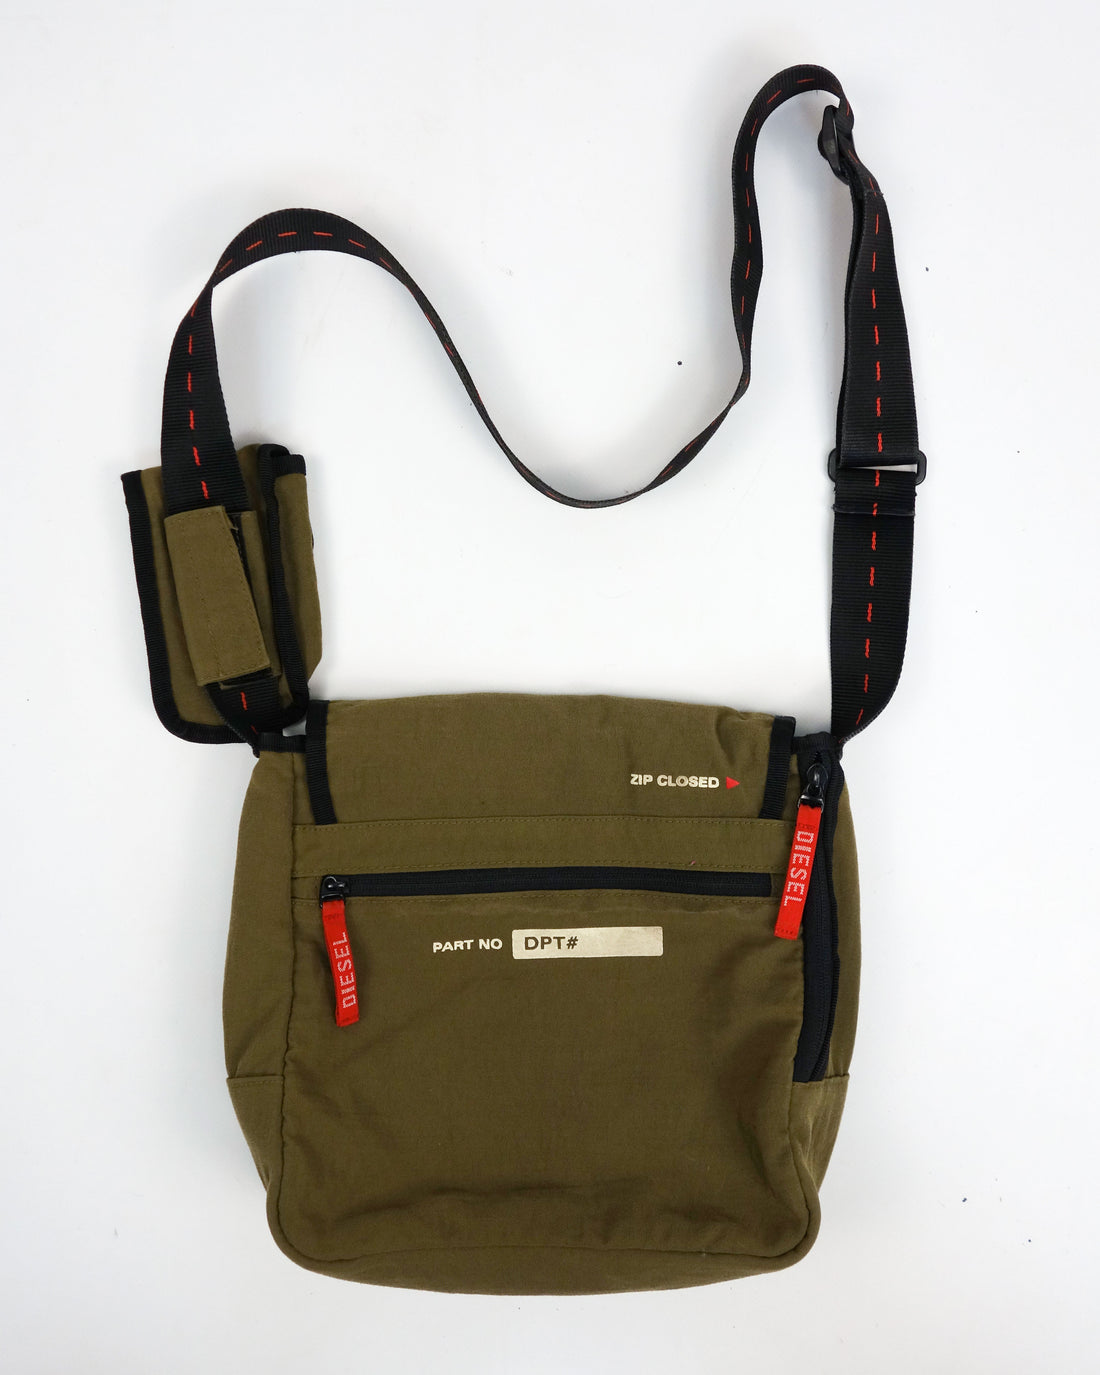 Diesel Parachute Green Side Bag 2000's